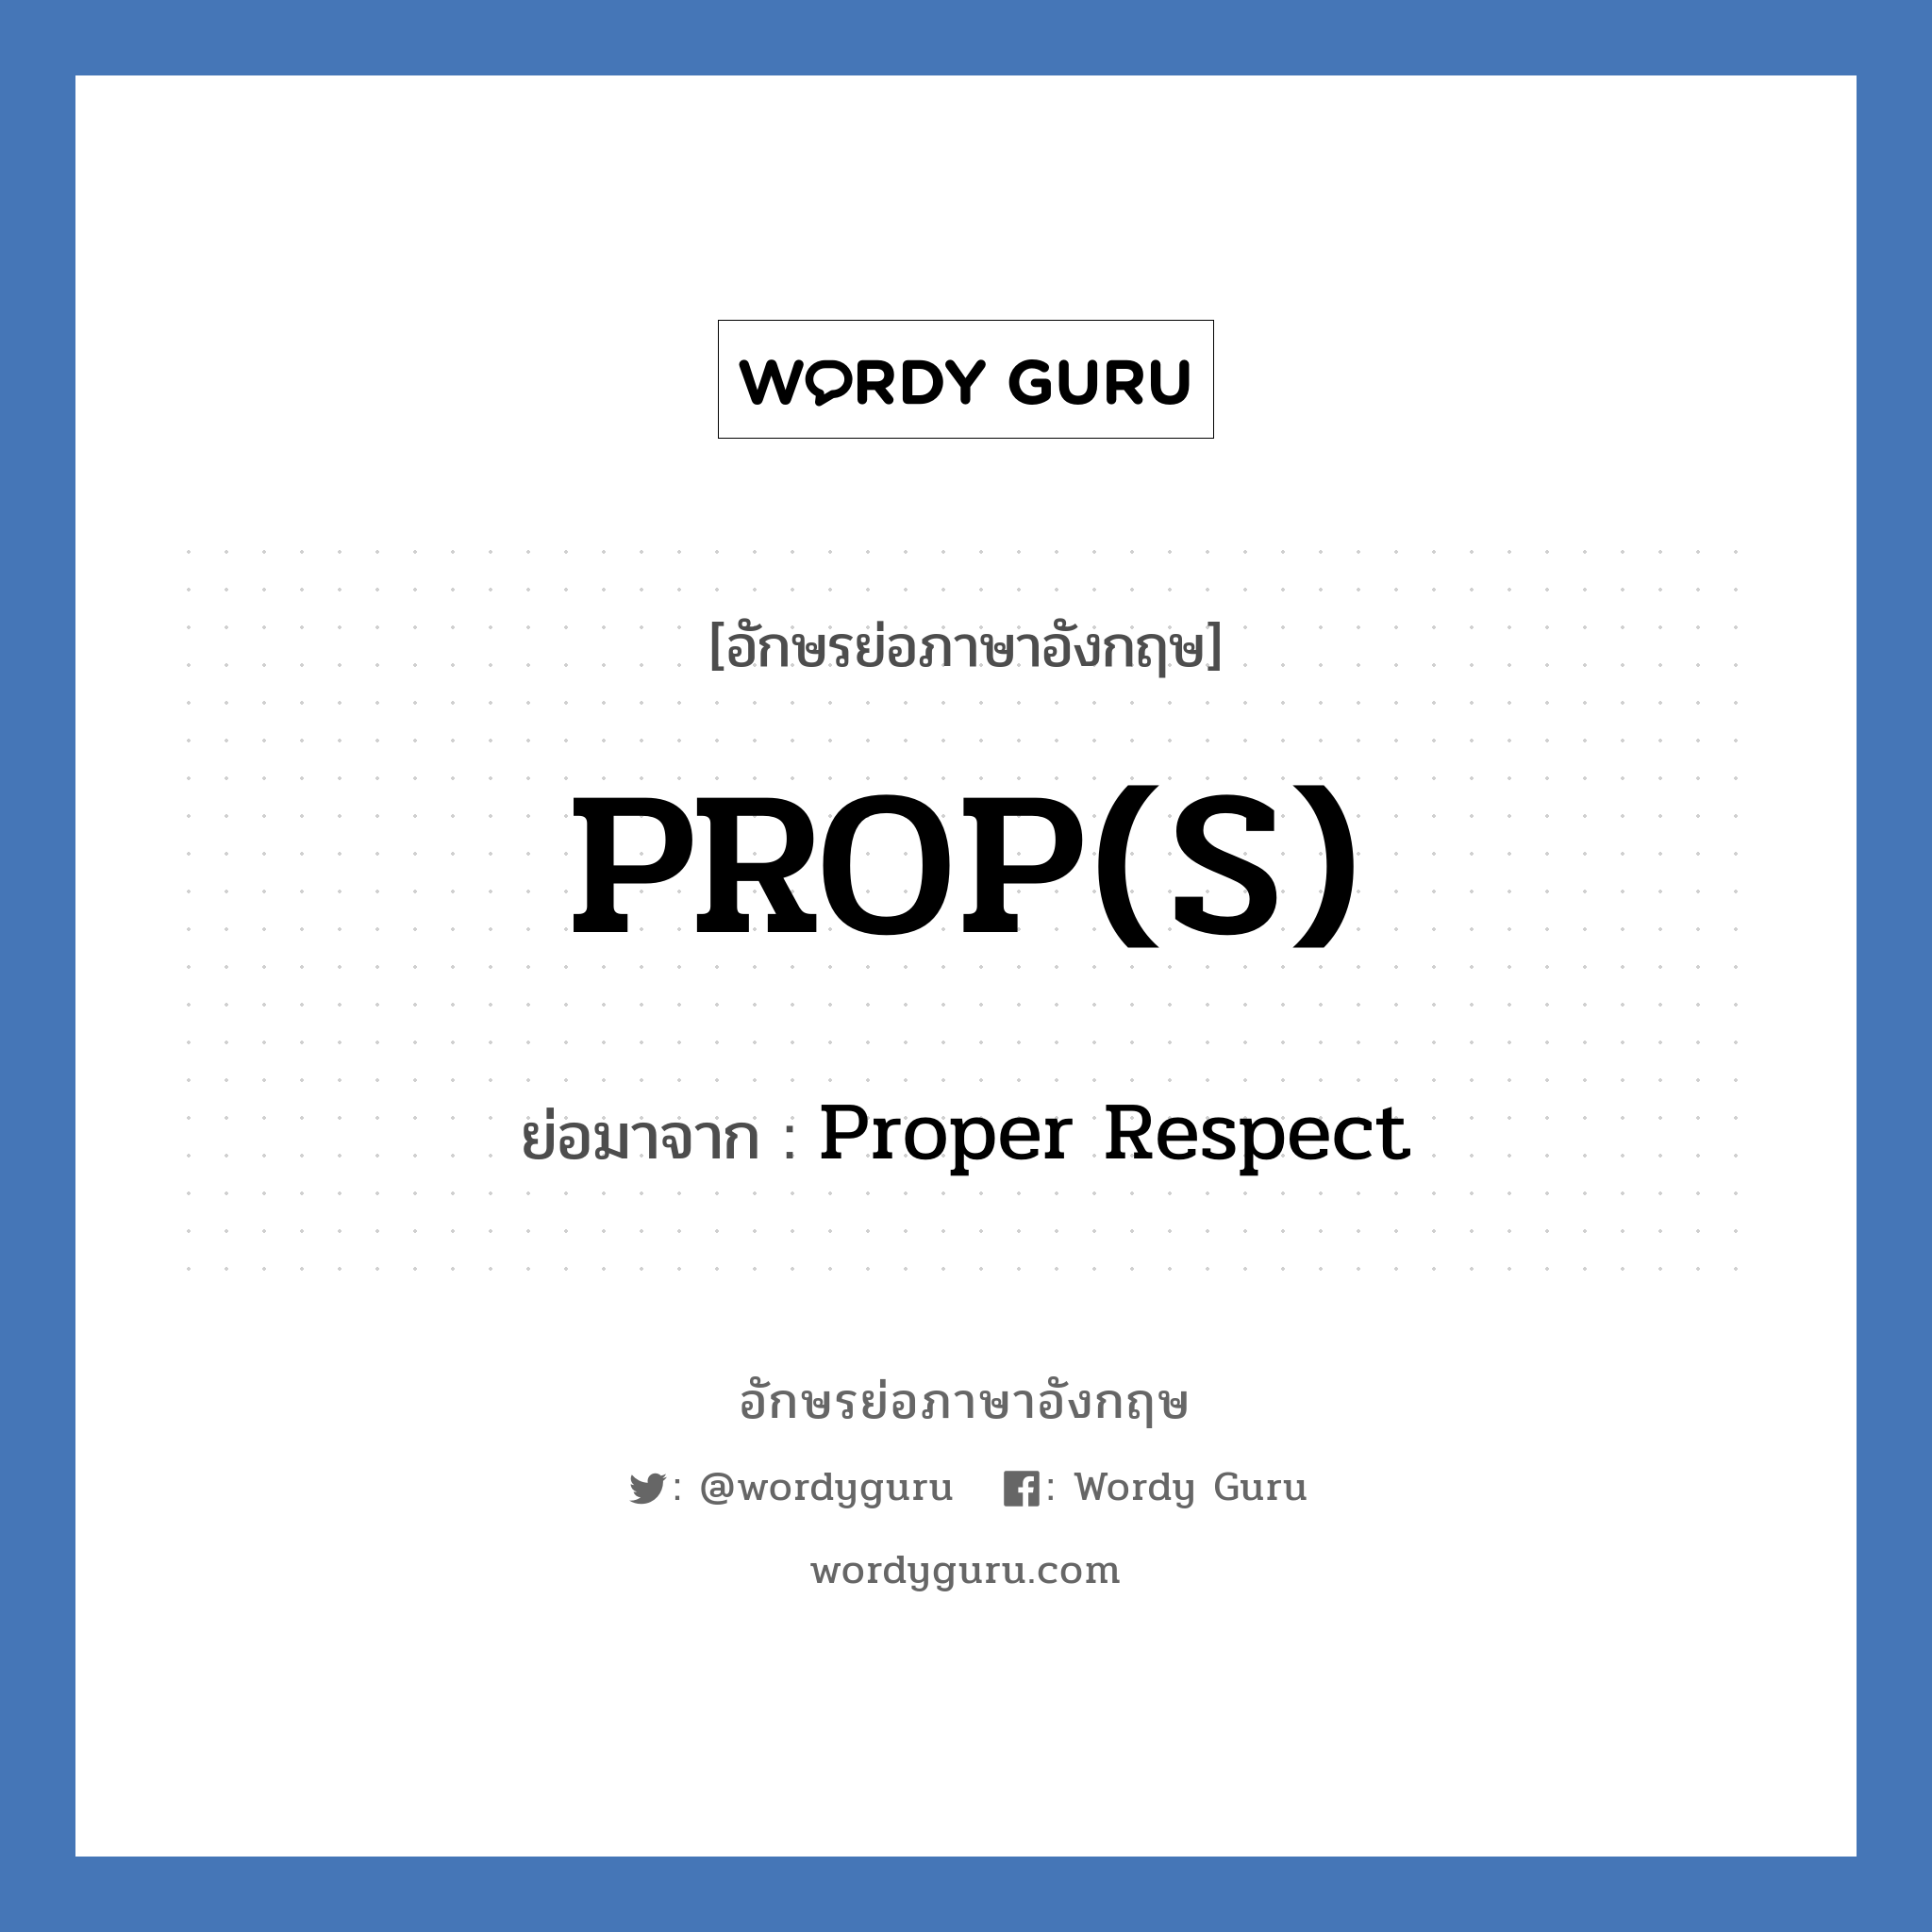 PROP(S) ย่อมาจาก? แปลว่า?, อักษรย่อภาษาอังกฤษ PROP(S) ย่อมาจาก Proper Respect